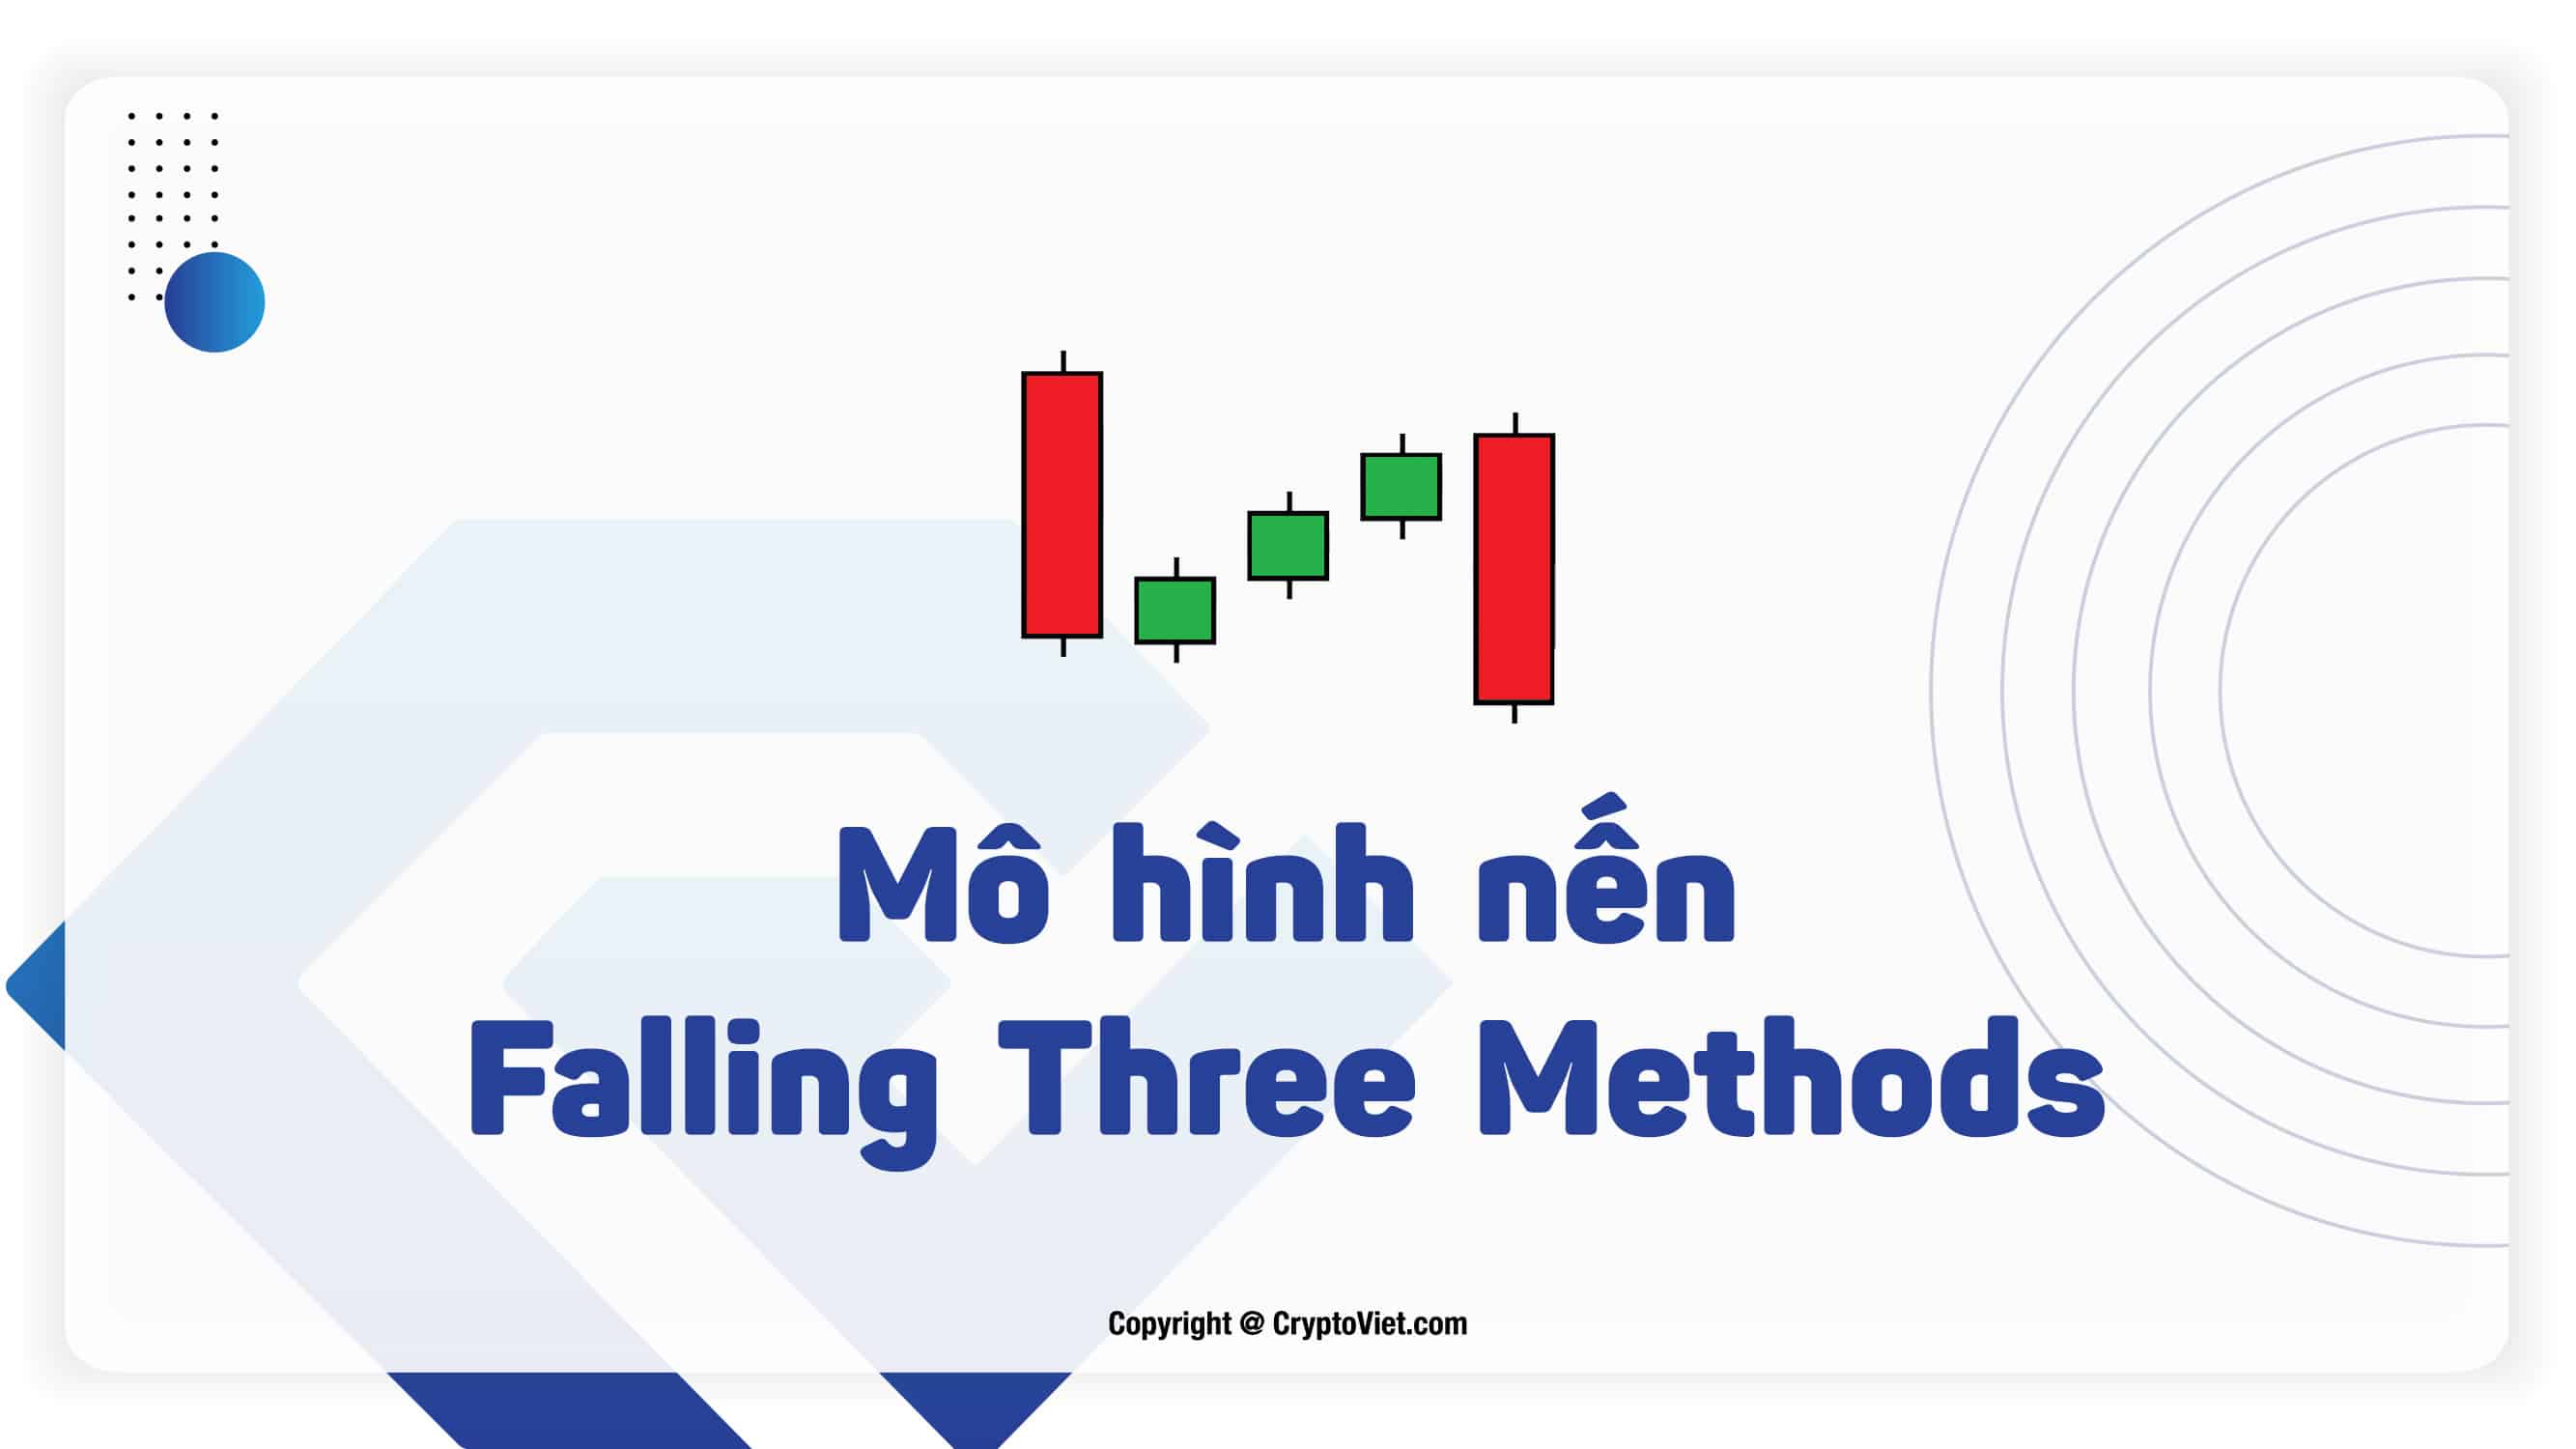 Mô hình nến Falling Three Methods (Giảm giá 3 bước) là gì?